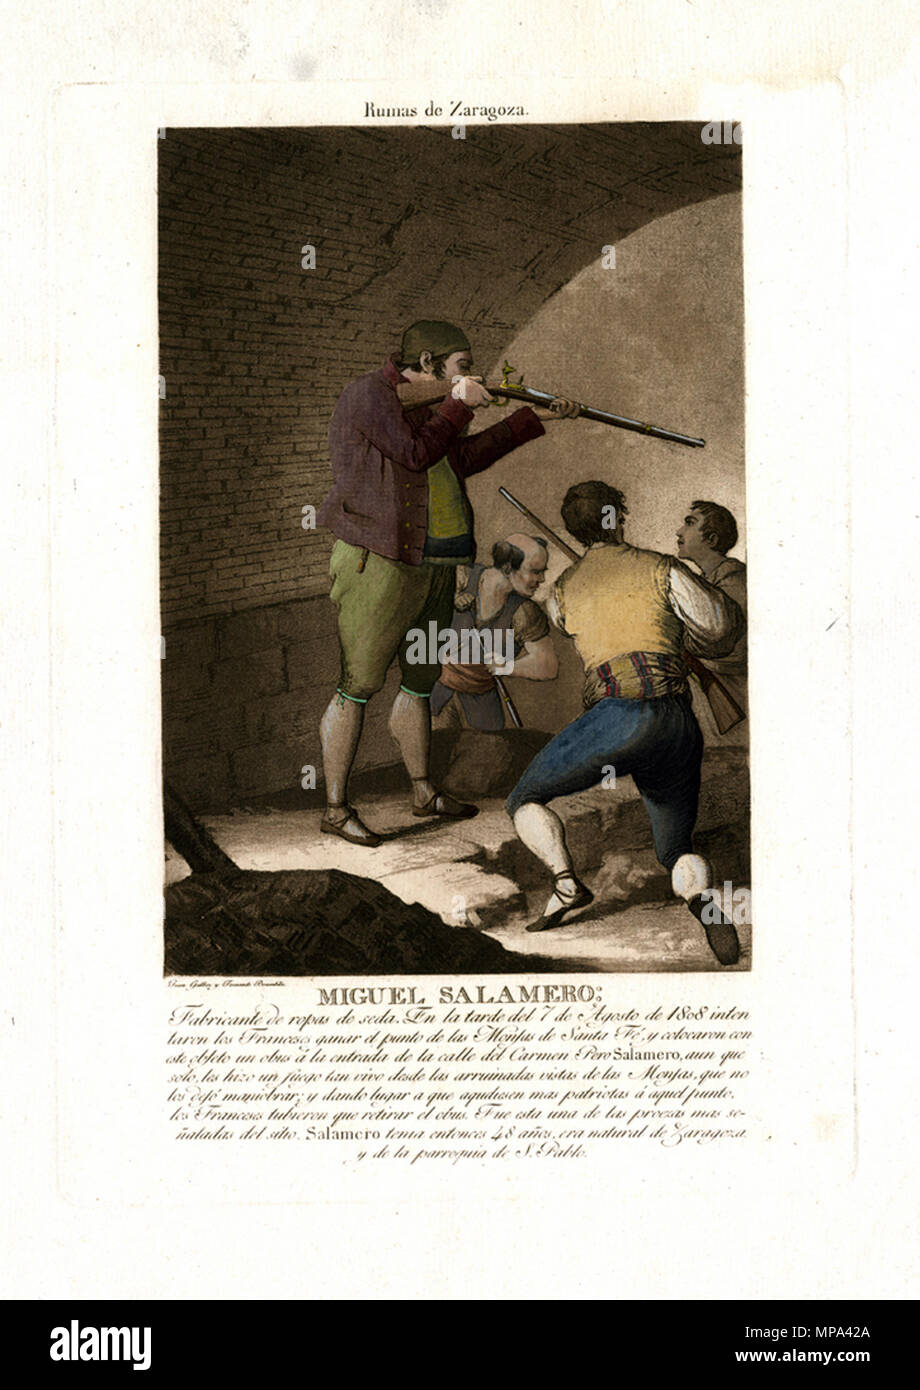 . Miguel Salamero, heróico defensor de la Ciudad de Zaragoza . 1808. Fernando Brambila 893 Miguel Salamero Foto Stock